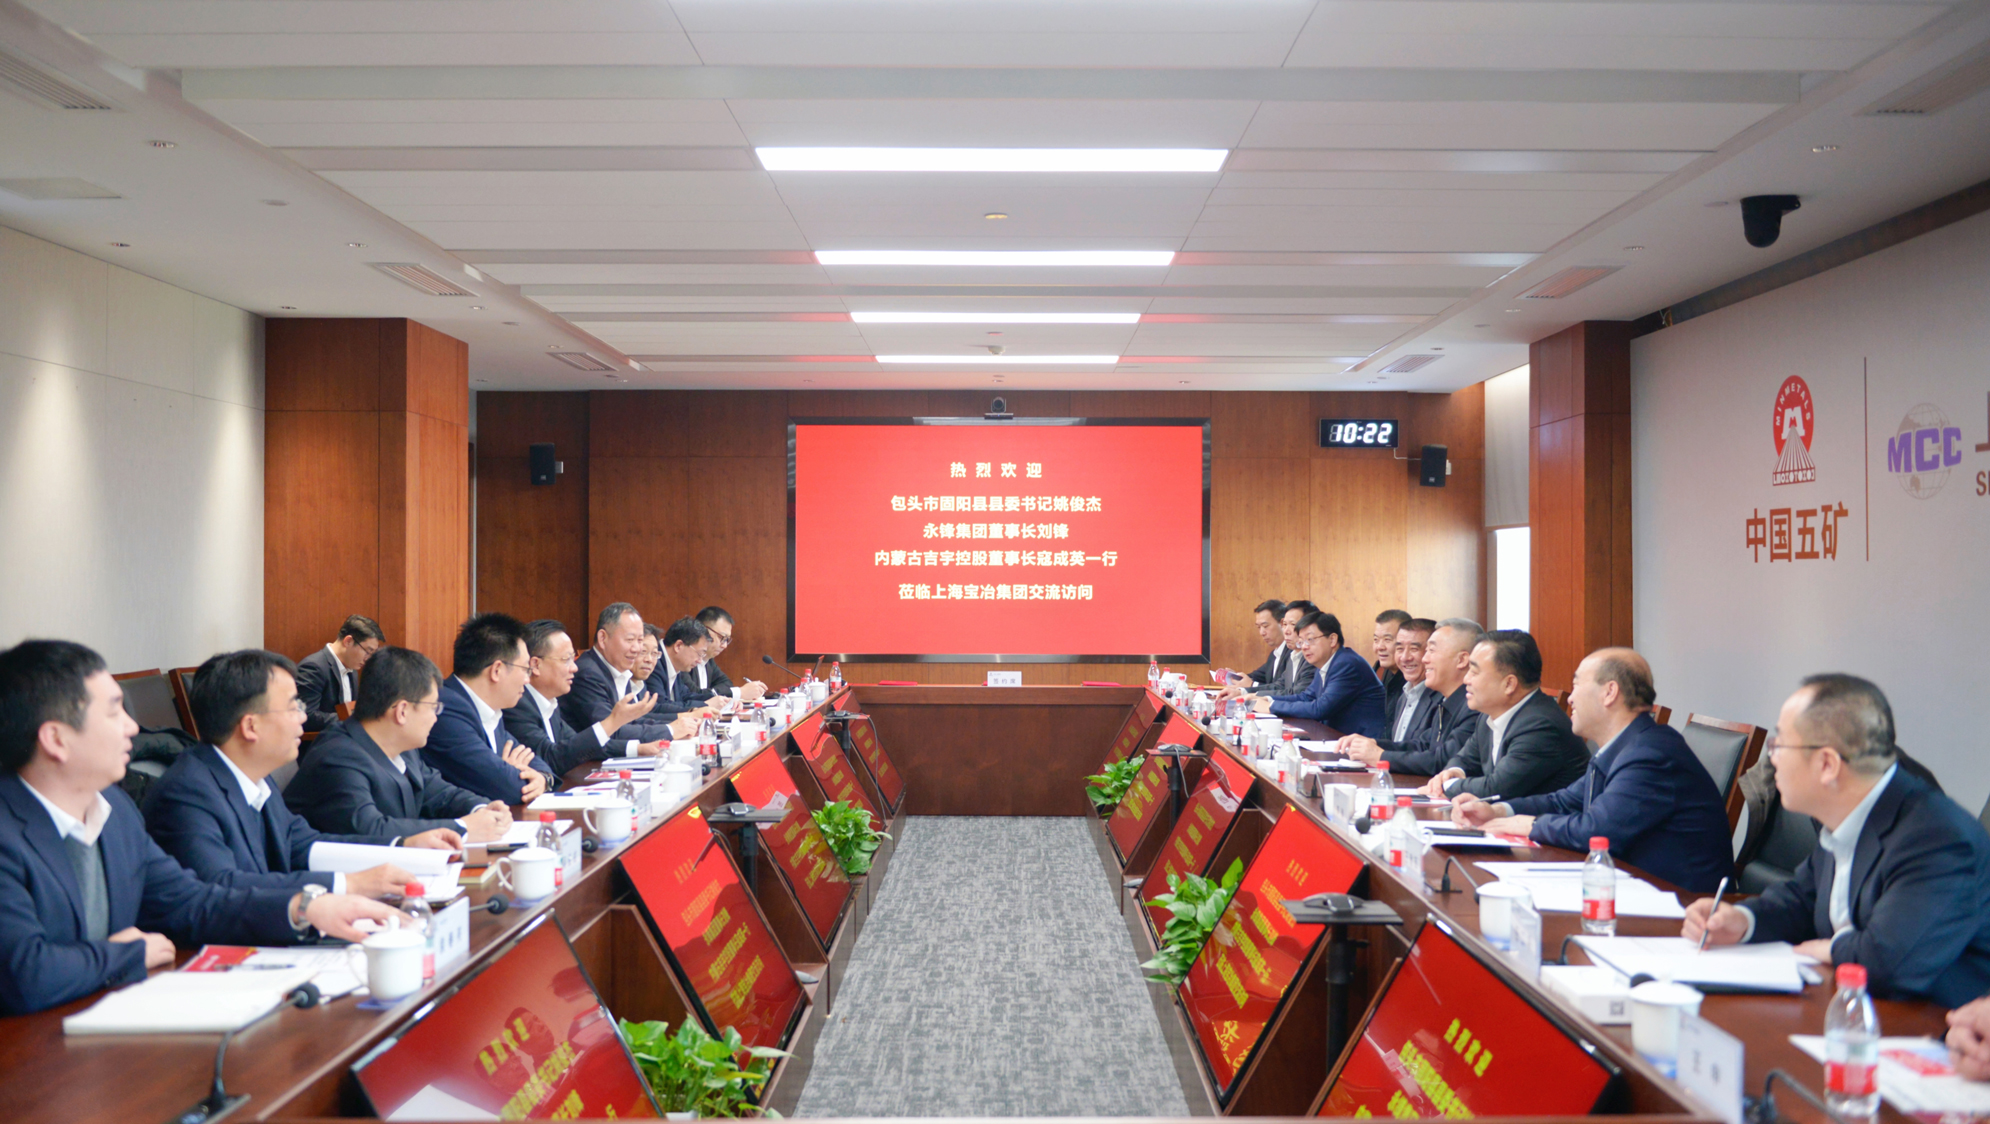 上海宝冶与永锋集团、内蒙古吉宇控股签署战略合作协议